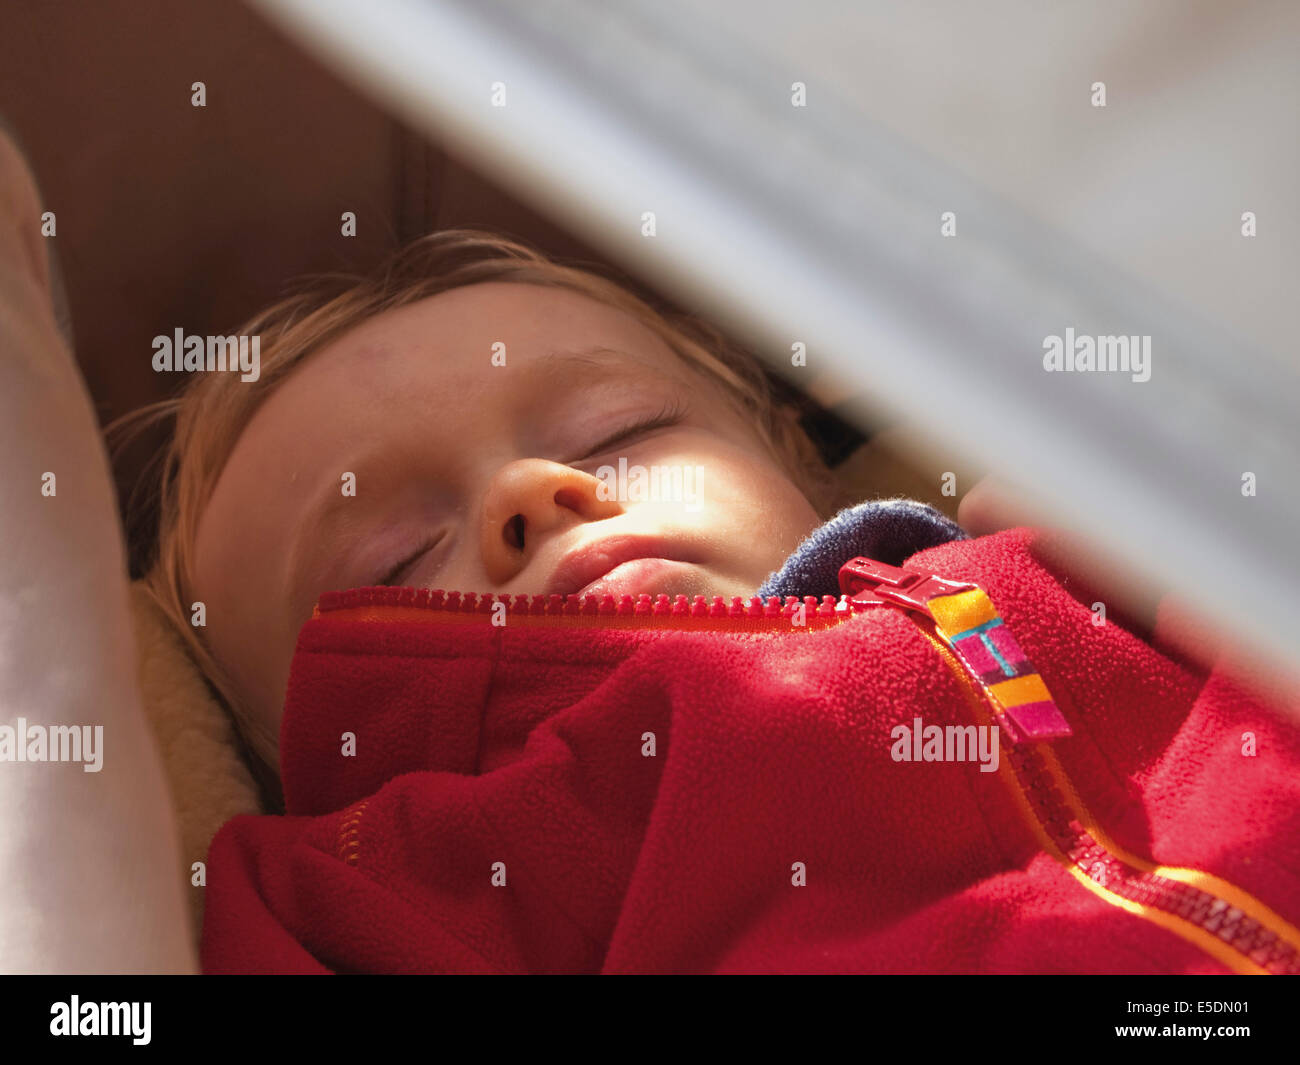 Baby boy sleeping Stock Photo